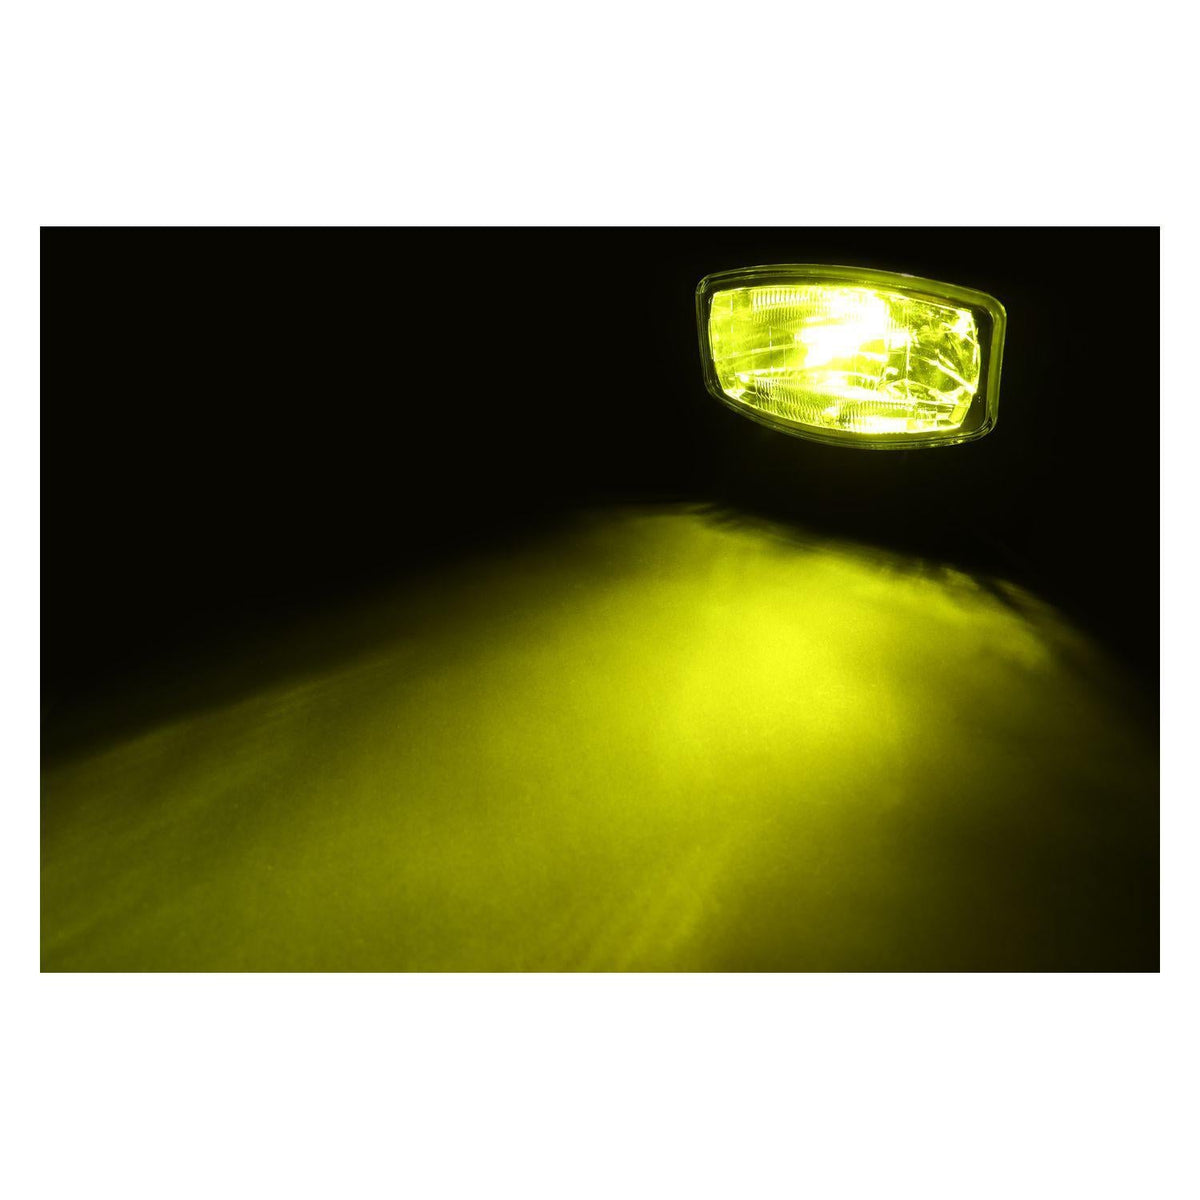 LED｢COBタイプ｣バルブ H7タイプ ホワイト/イエロー 12V/24V車共用 ジェットイノウエ –  トラック用品/部品/パーツ専門店のトラック王国パーツ館